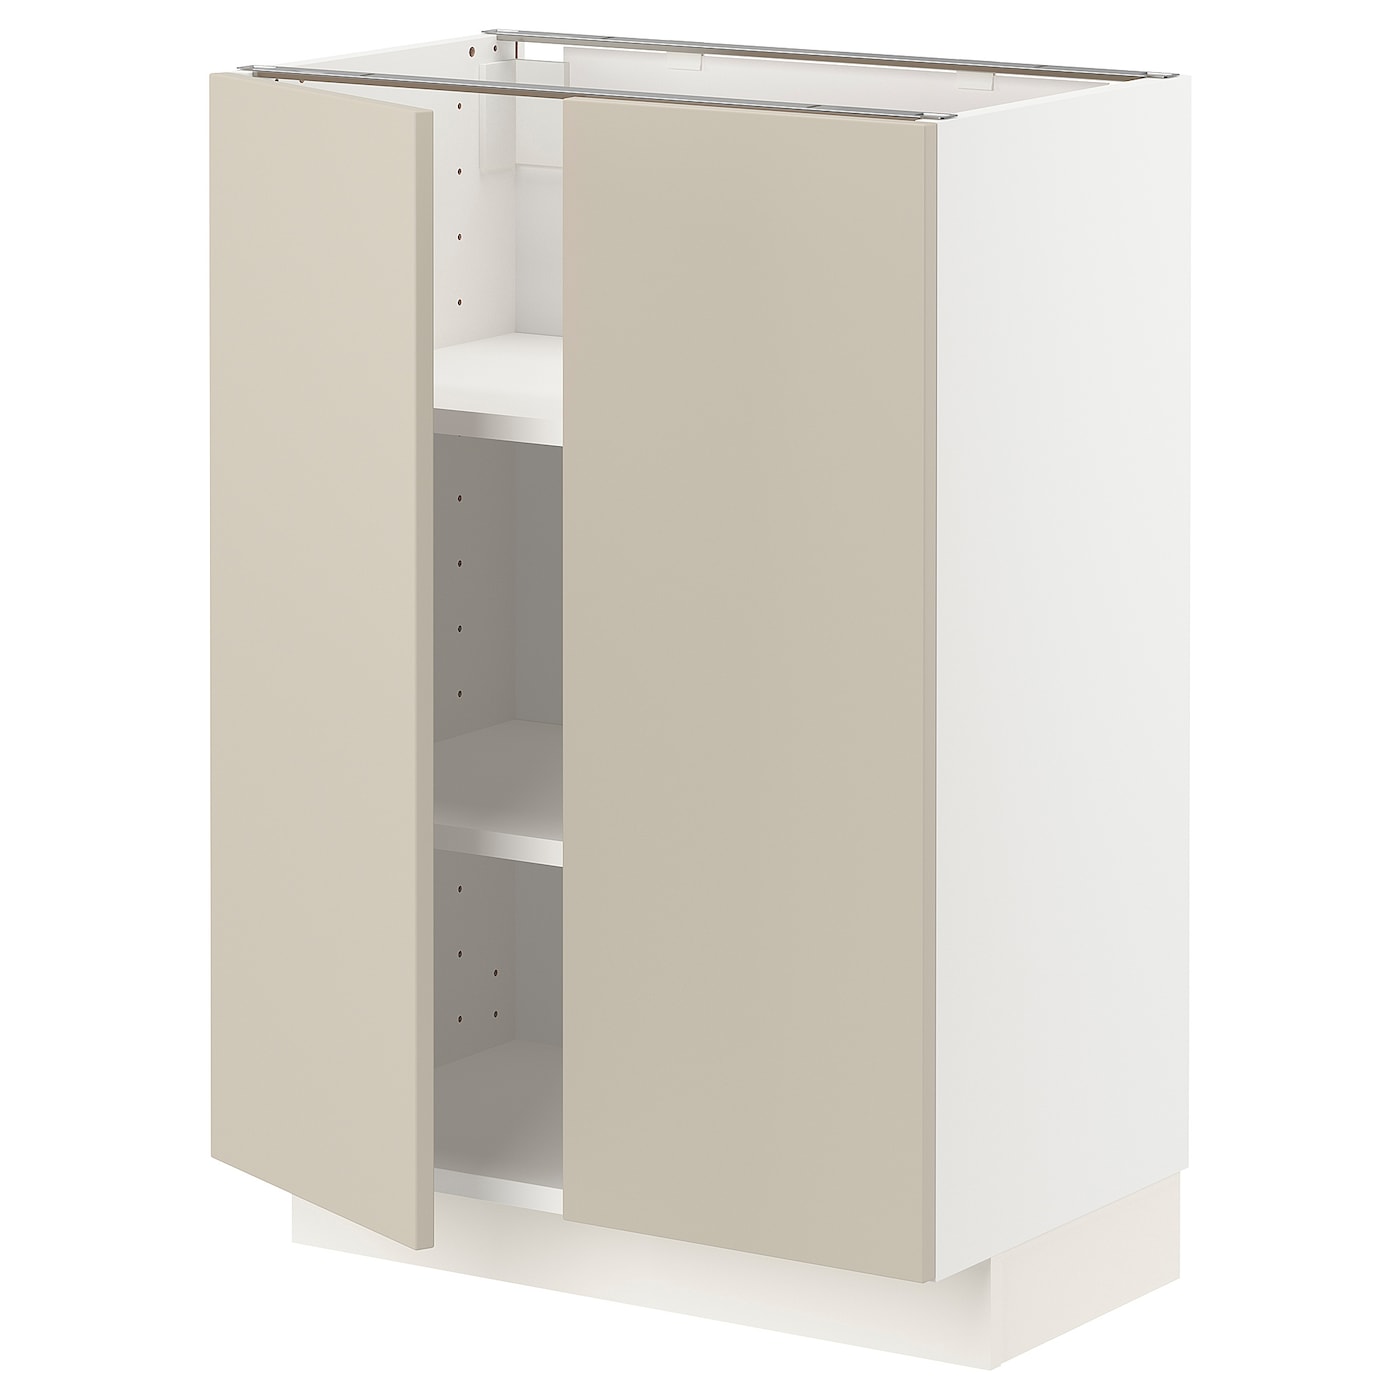 Напольный шкаф - METOD IKEA/ МЕТОД ИКЕА,  60х88 см, белый/светло-бежевый